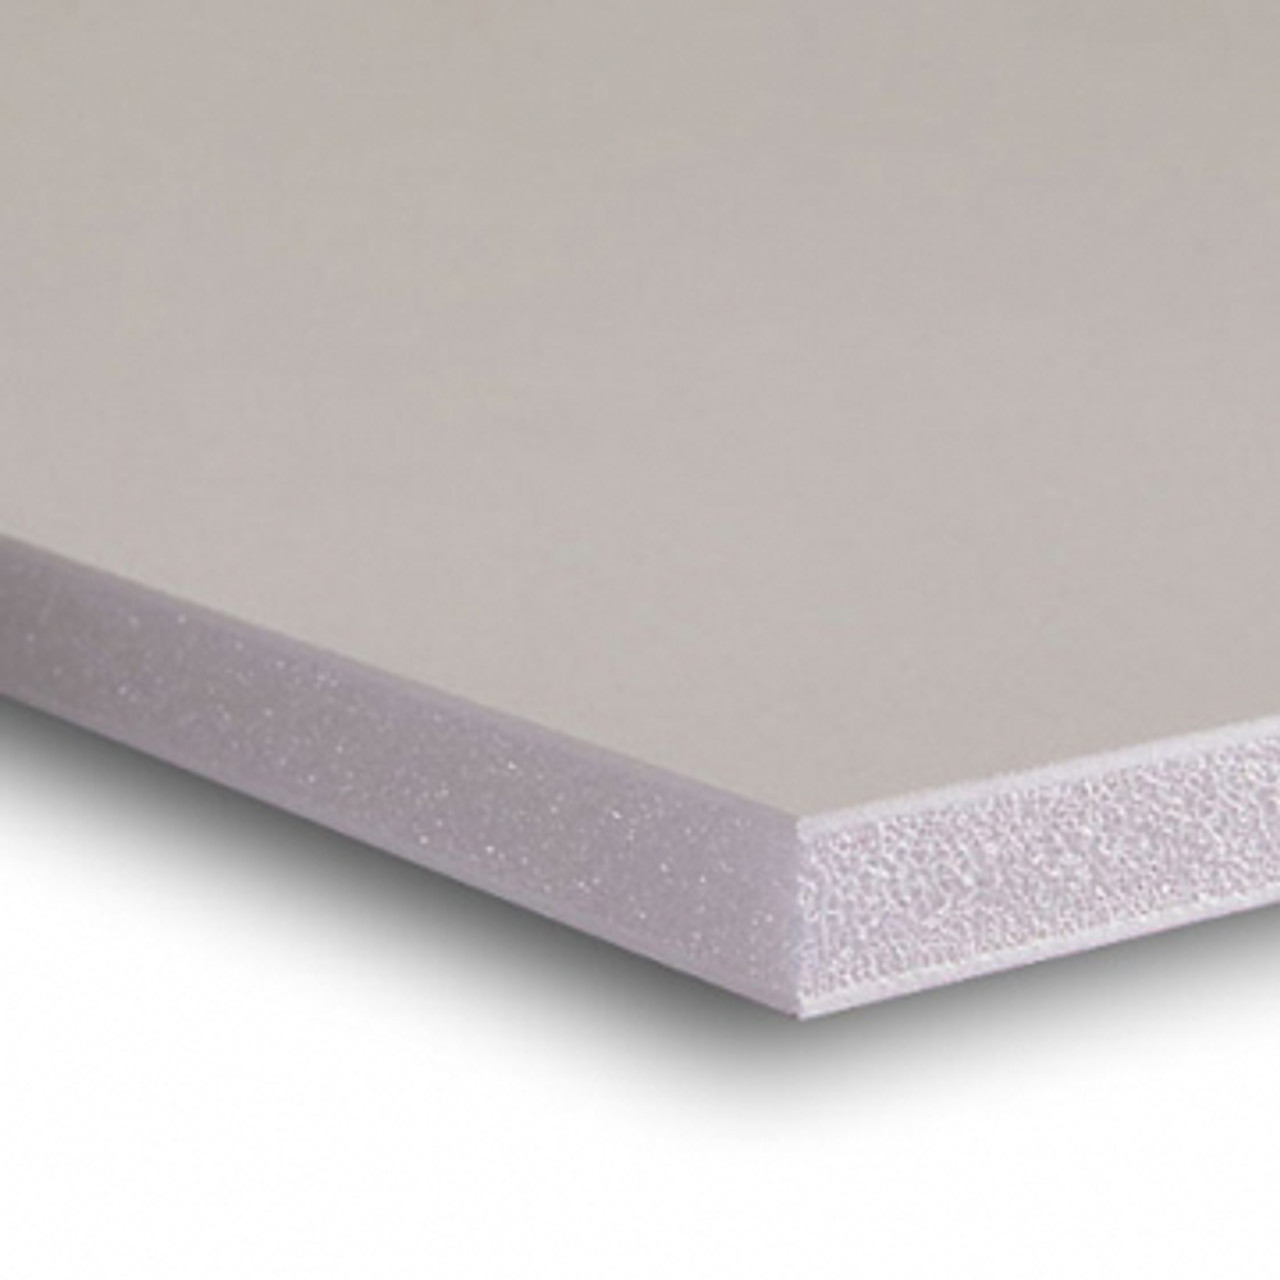 3/8 White Acid Free Buffered Foam Core Boards : 12 X 24 